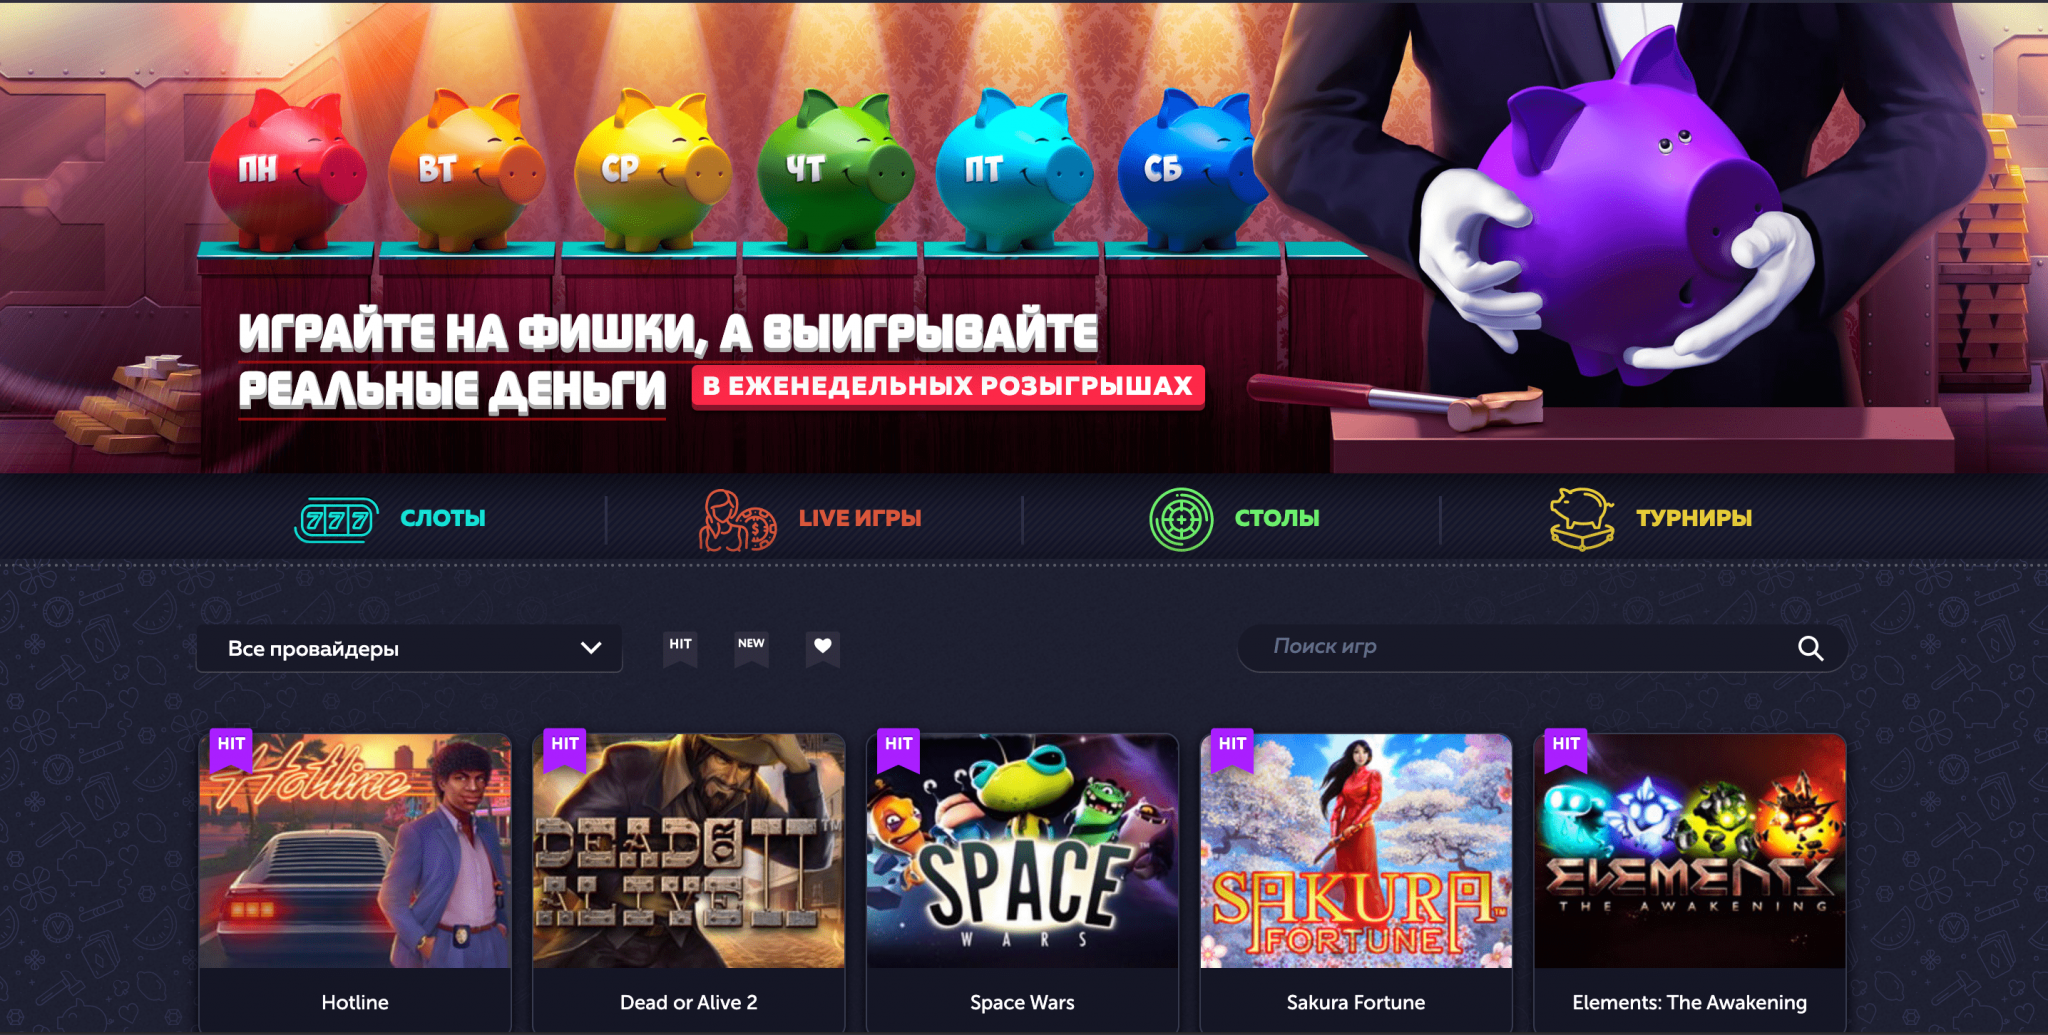 Официальный сайт казино Cat Casino